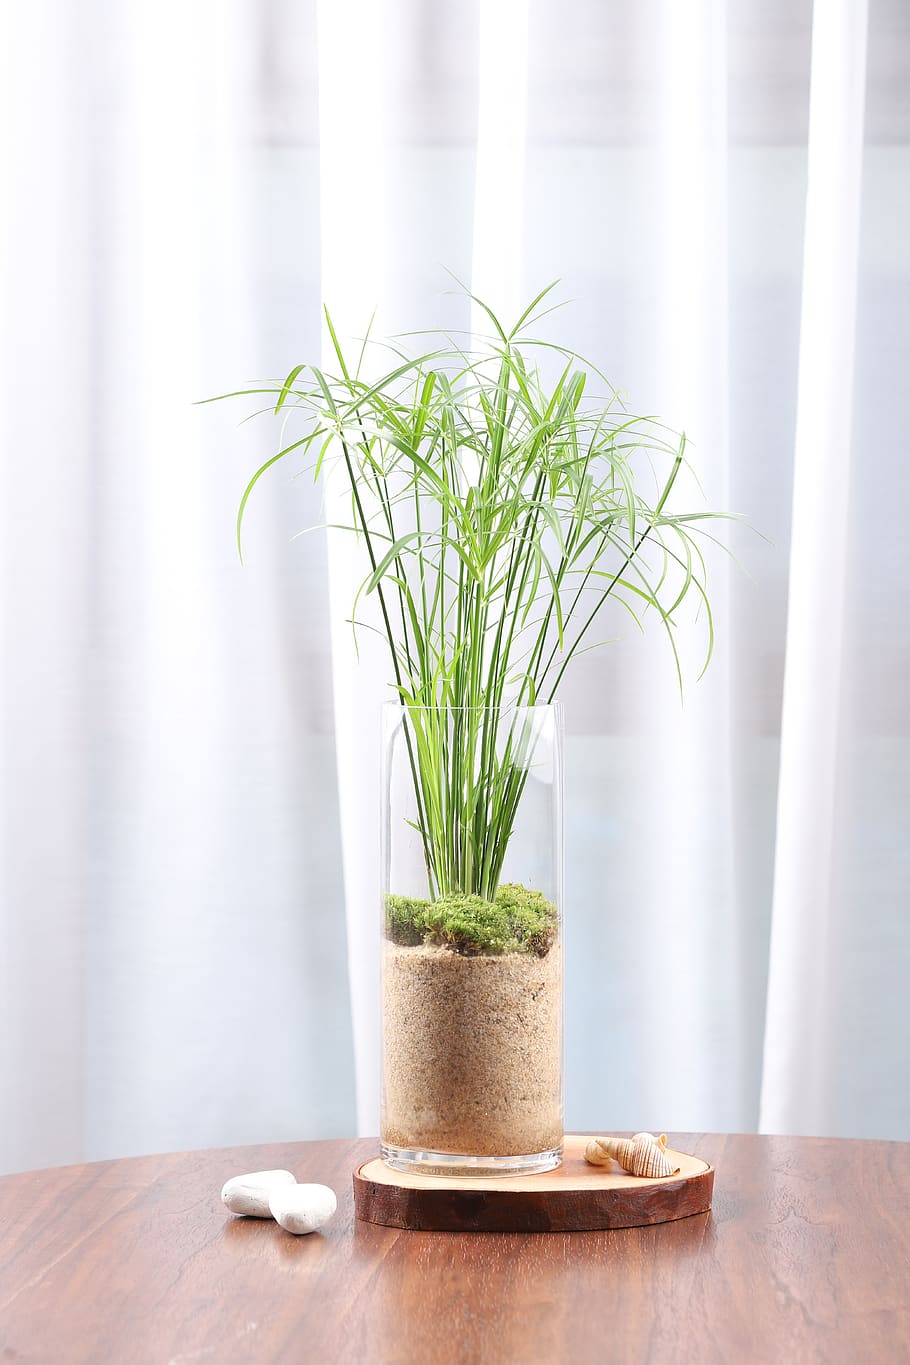 papiro, plantas hidropônicas, terrário, planta, crescimento, dentro de casa, ninguém, vaso de plantas, natureza, mesa